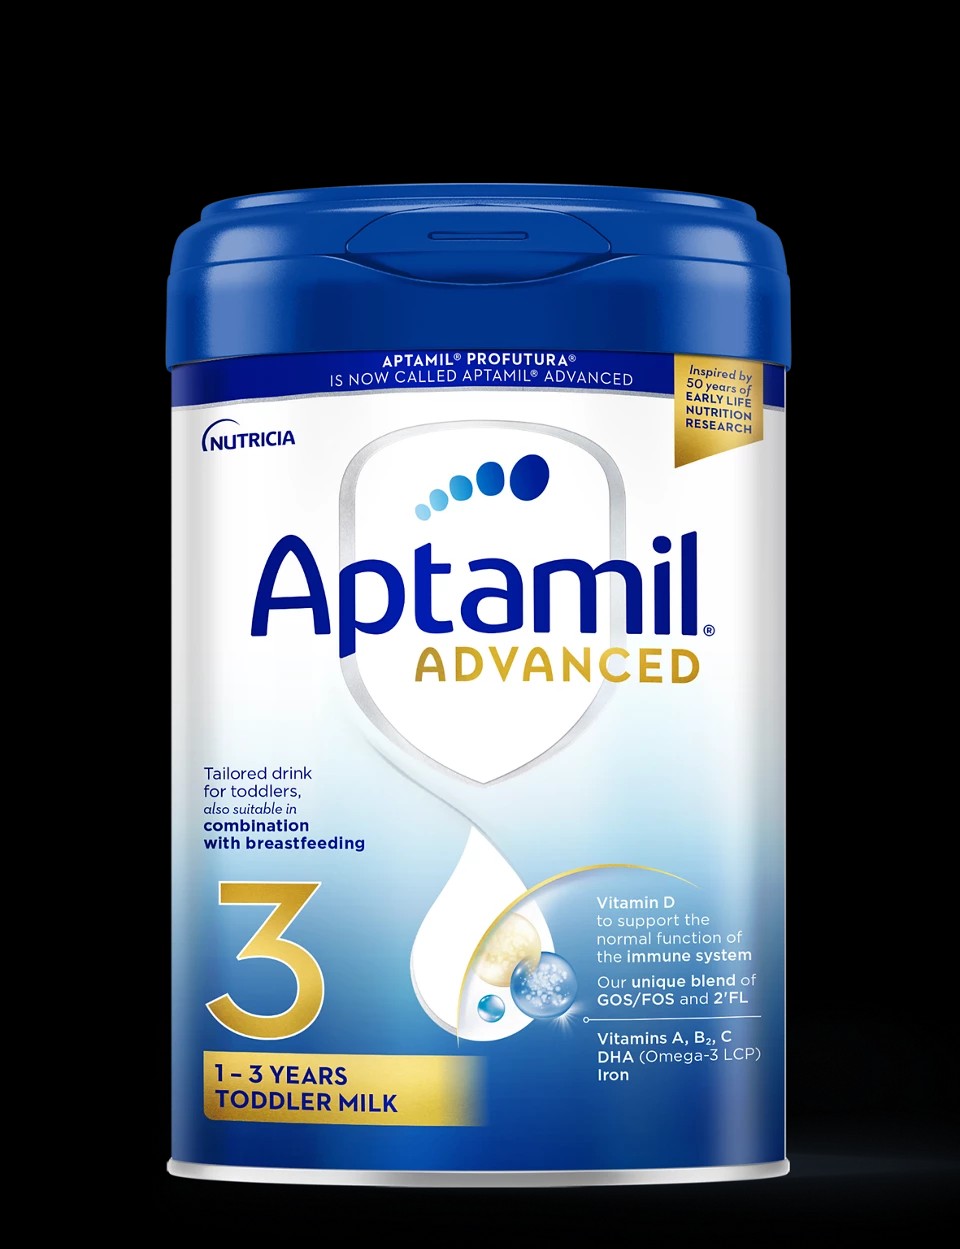 Aptamil Organic No 3 800g – Royal Mamas And Tots